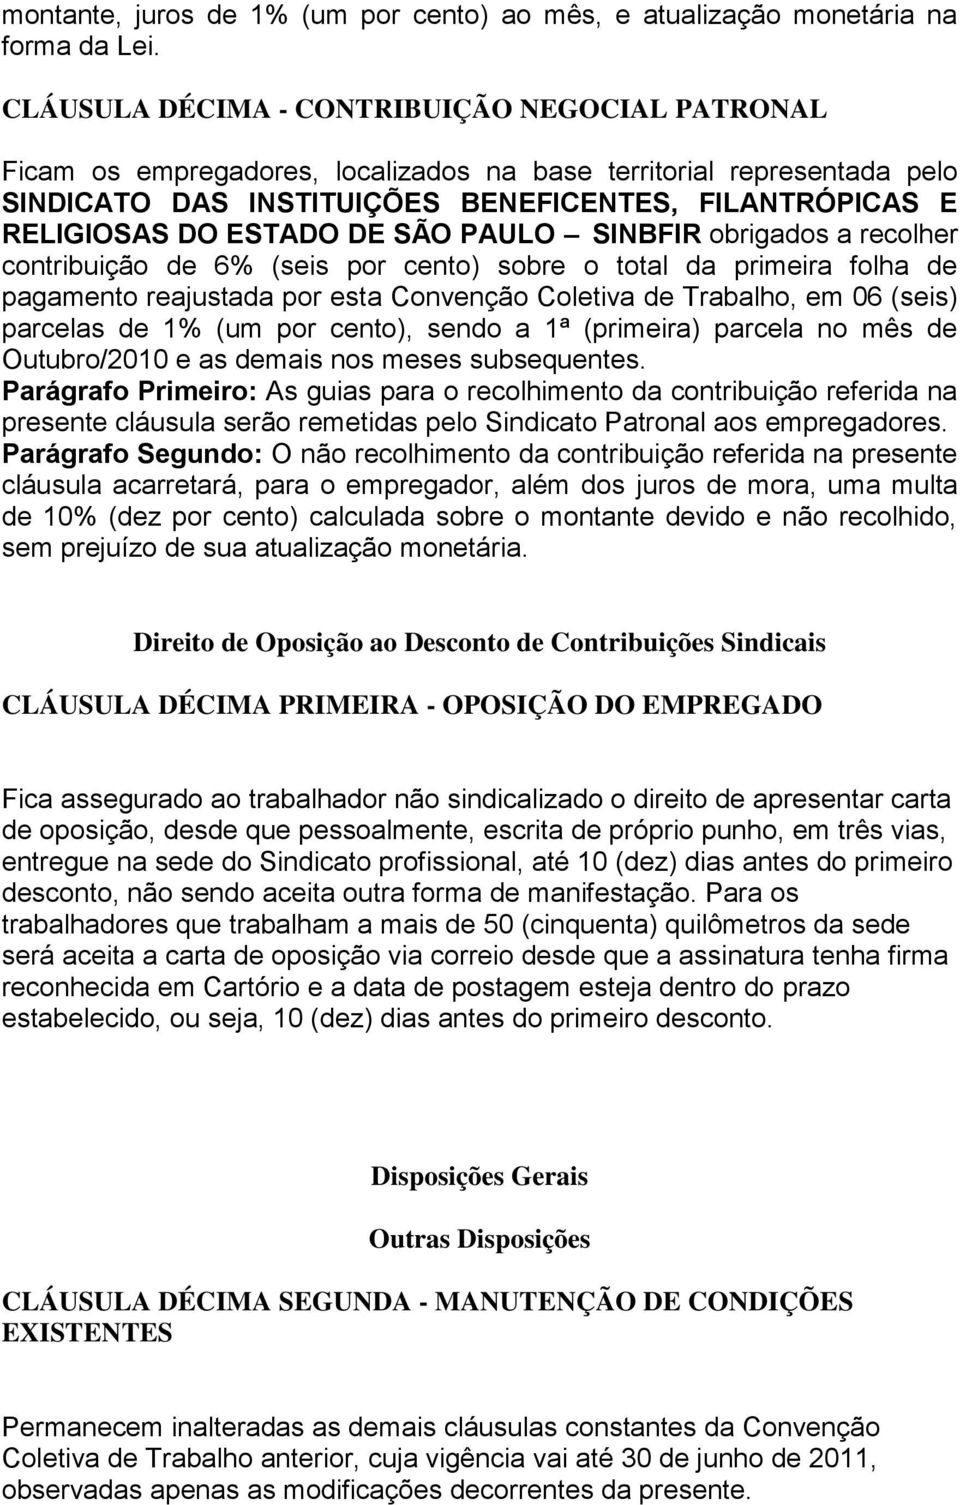 DE SÃO PAULO SINBFIR obrigados a recolher contribuição de 6% (seis por cento) sobre o total da primeira folha de pagamento reajustada por esta Convenção Coletiva de Trabalho, em 06 (seis) parcelas de